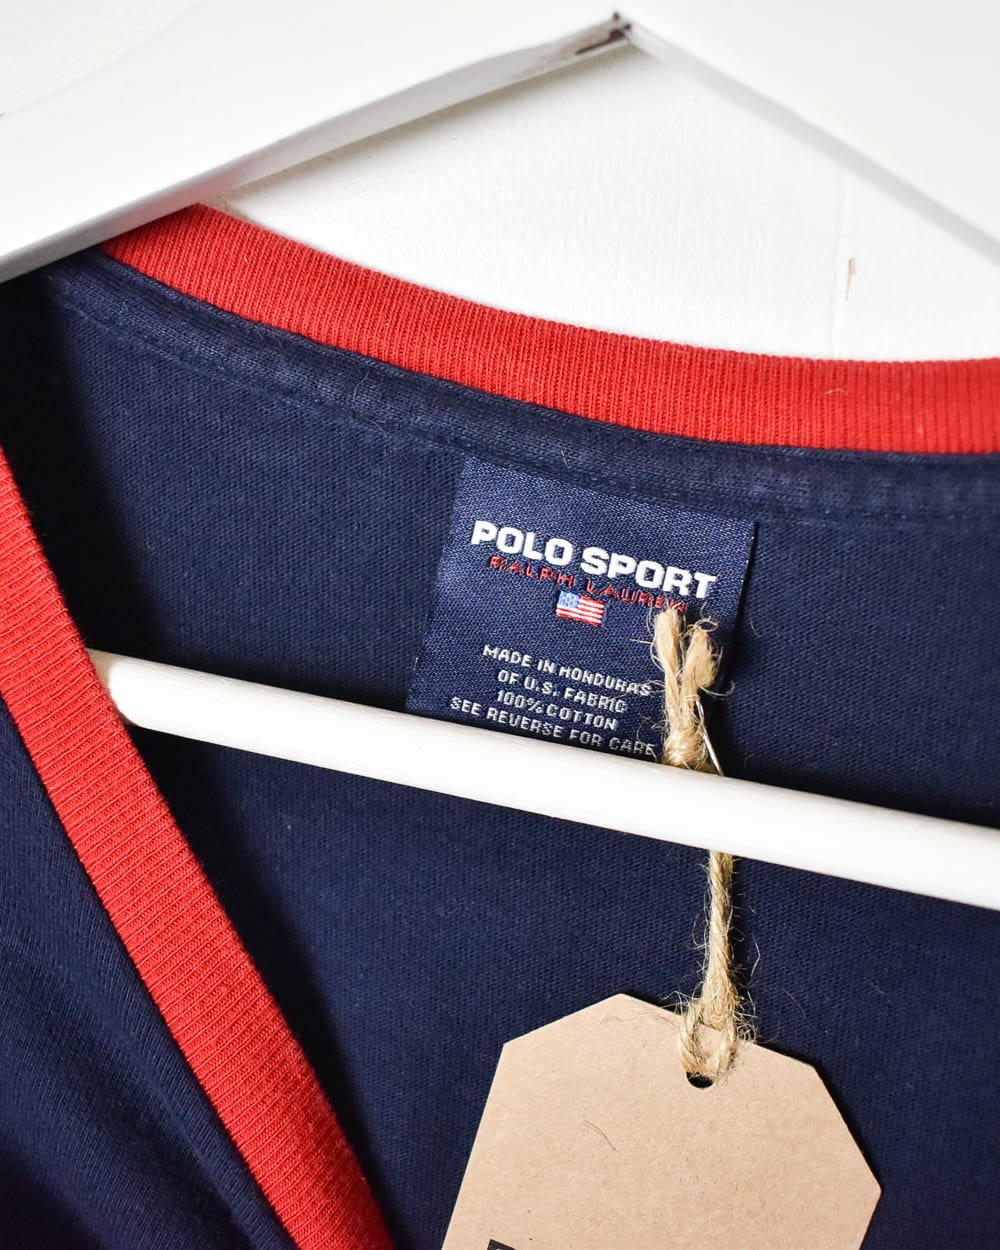 Navy Polo Sport Ralph Lauren T-Shirt - XX-Large